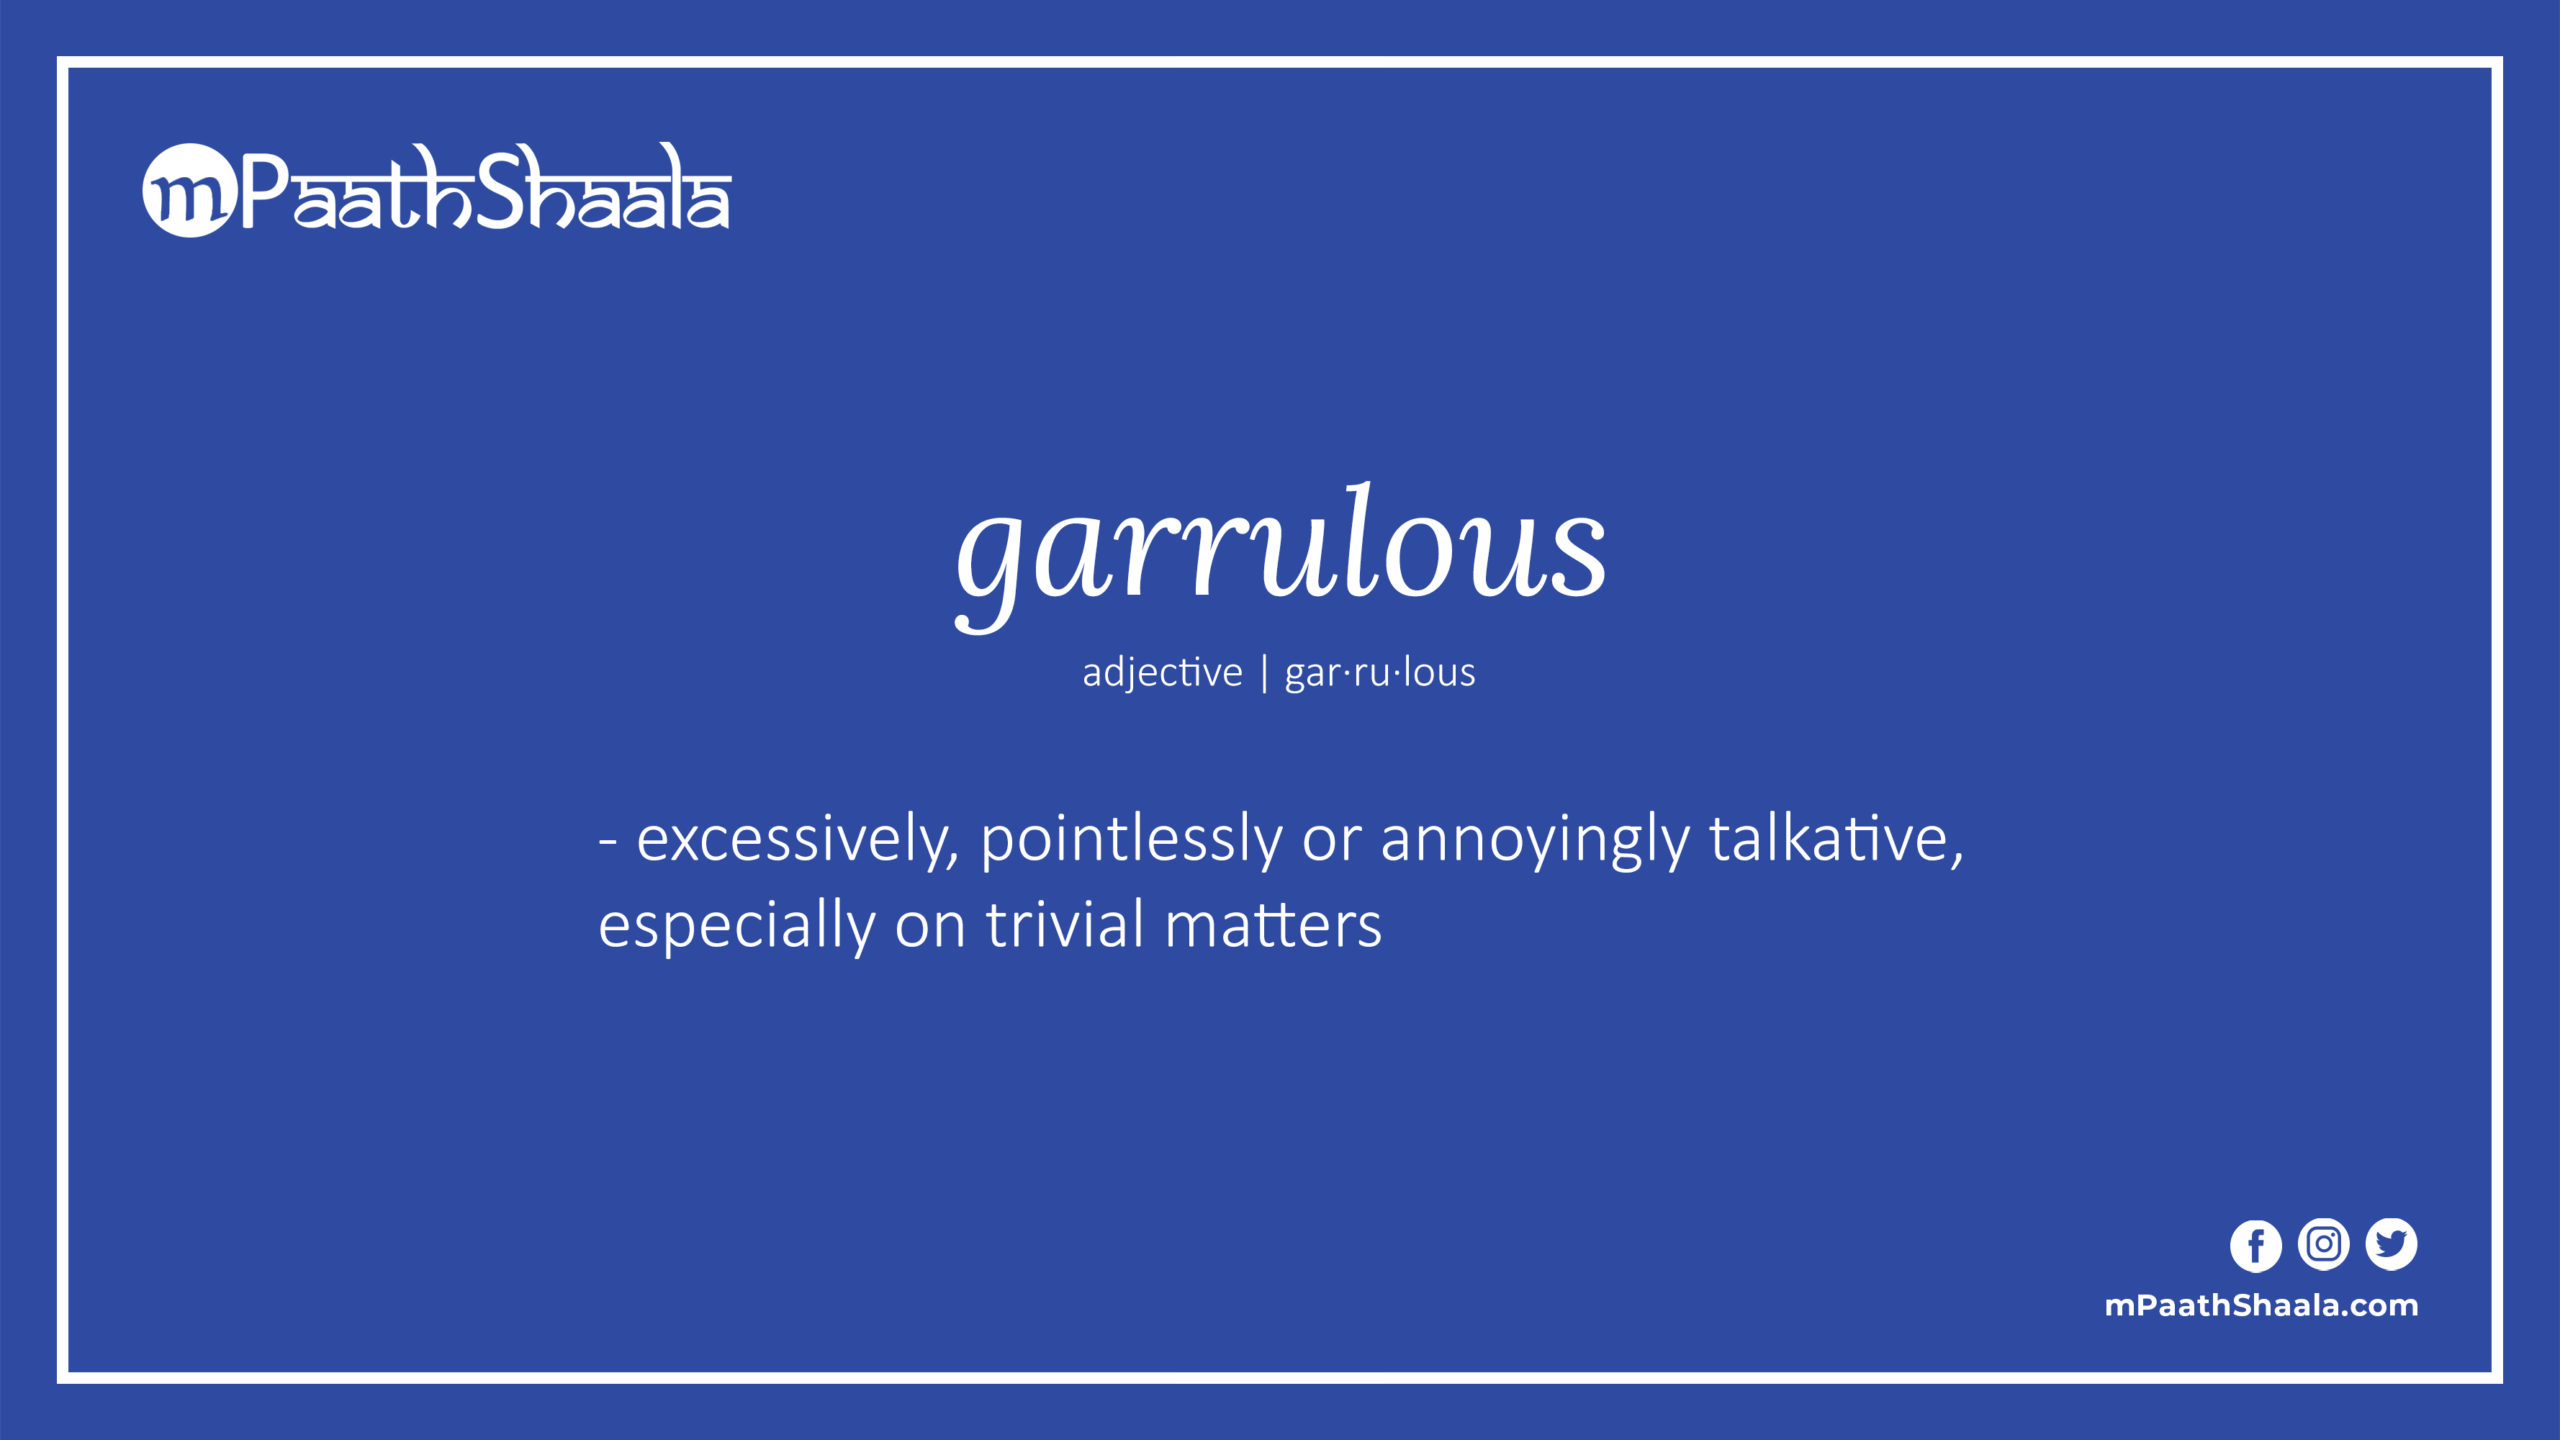 define garrulous